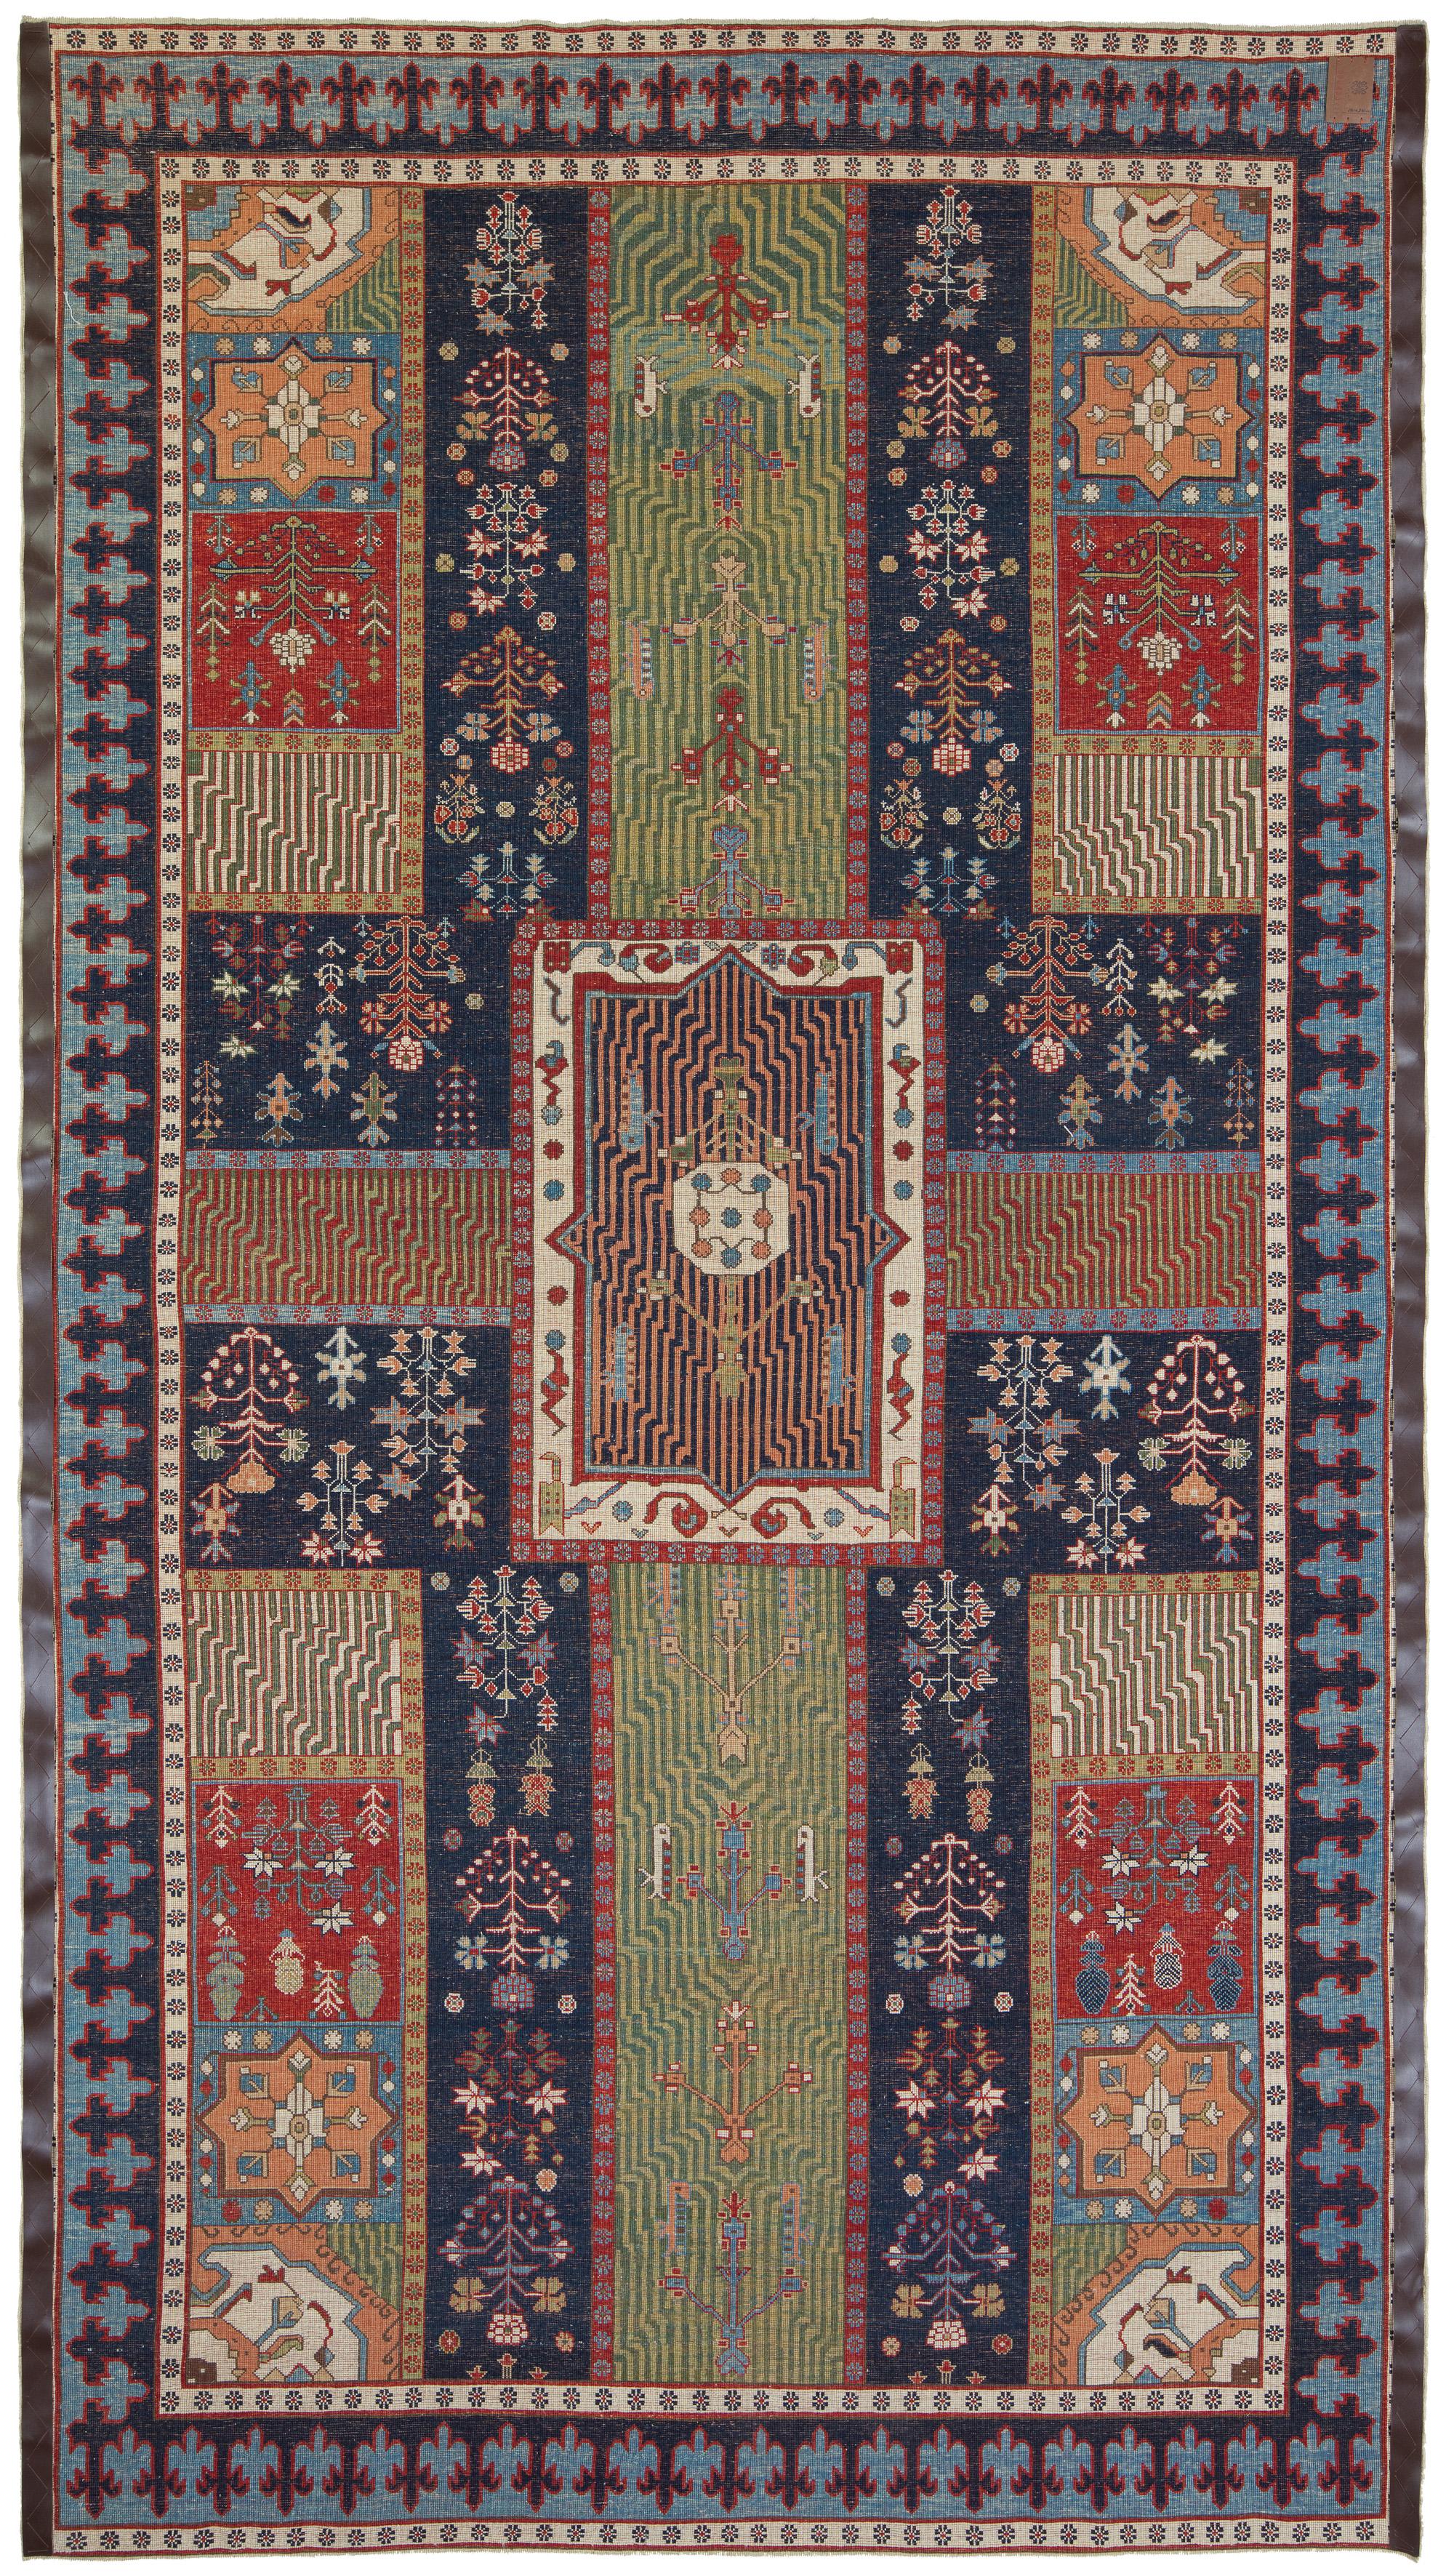 Die Quelle des Teppichs stammt aus dem Buch Islamic Carpets, Joseph V. McMullan, Near Eastern Art Research Center Inc. 1965, New York, Nr. 28. Dieser Teppich mit dem Design Persian Garden stammt aus der zweiten Hälfte des 18. Jahrhunderts aus der